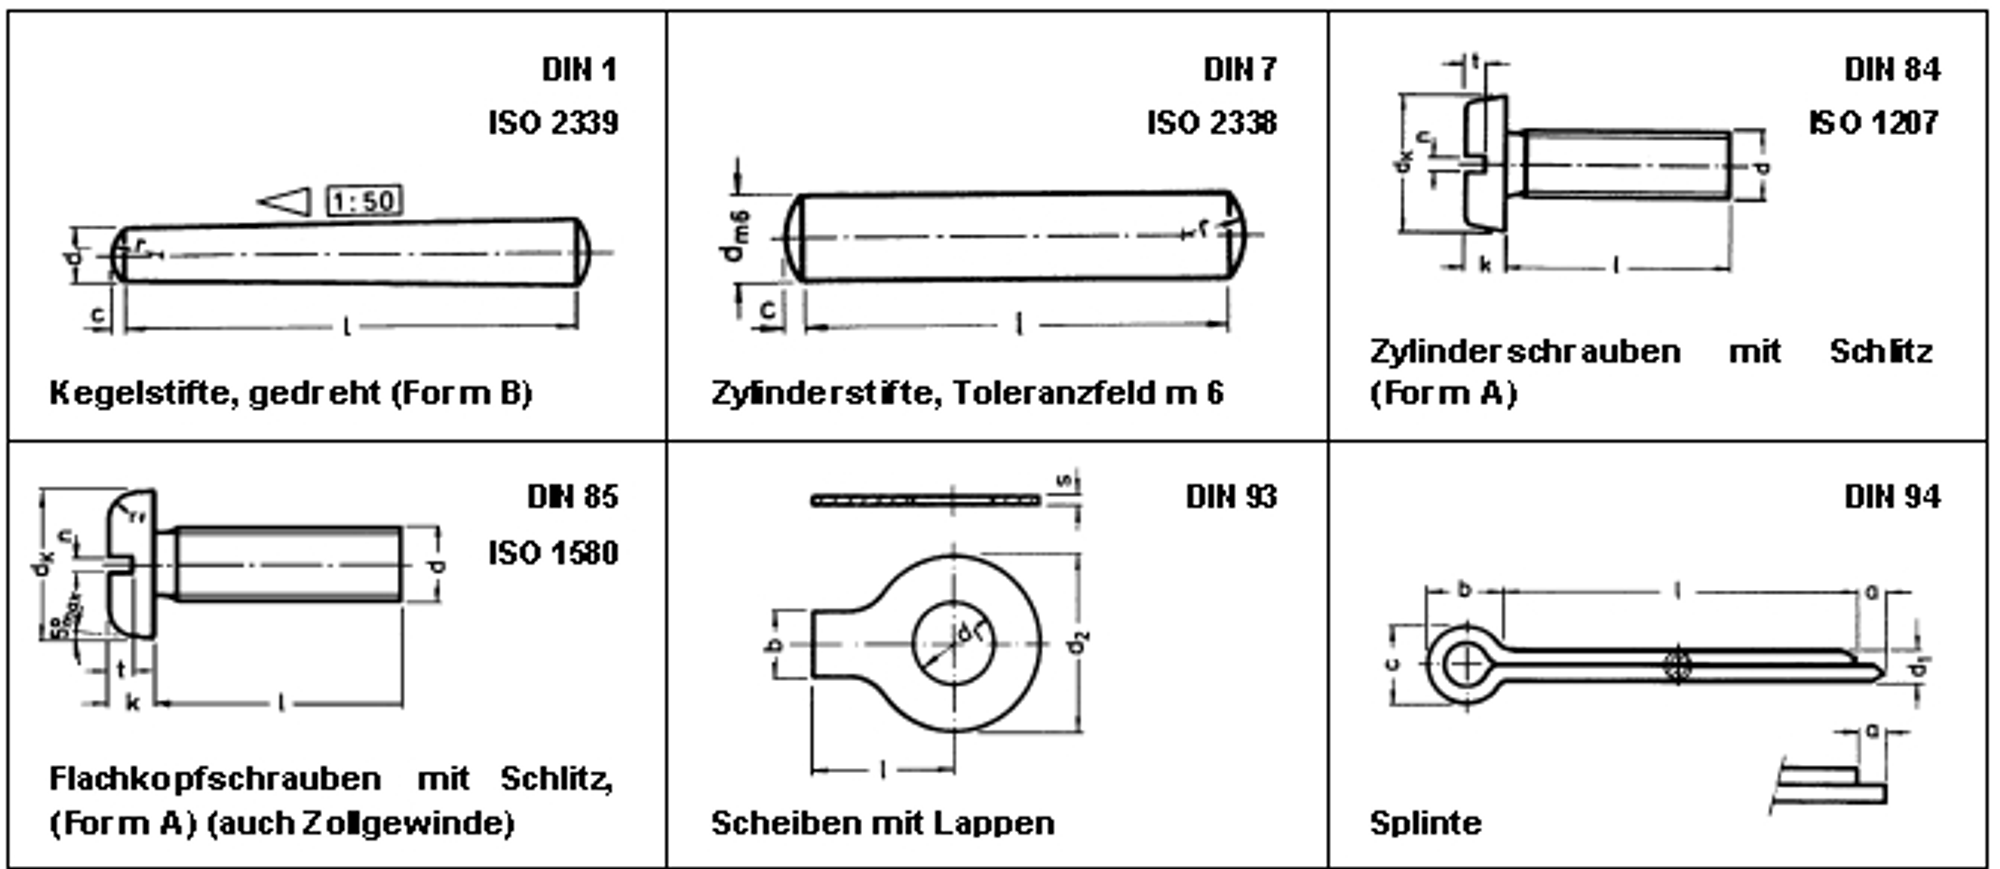 Разные стандарты металлических изделий по DIN и ISO